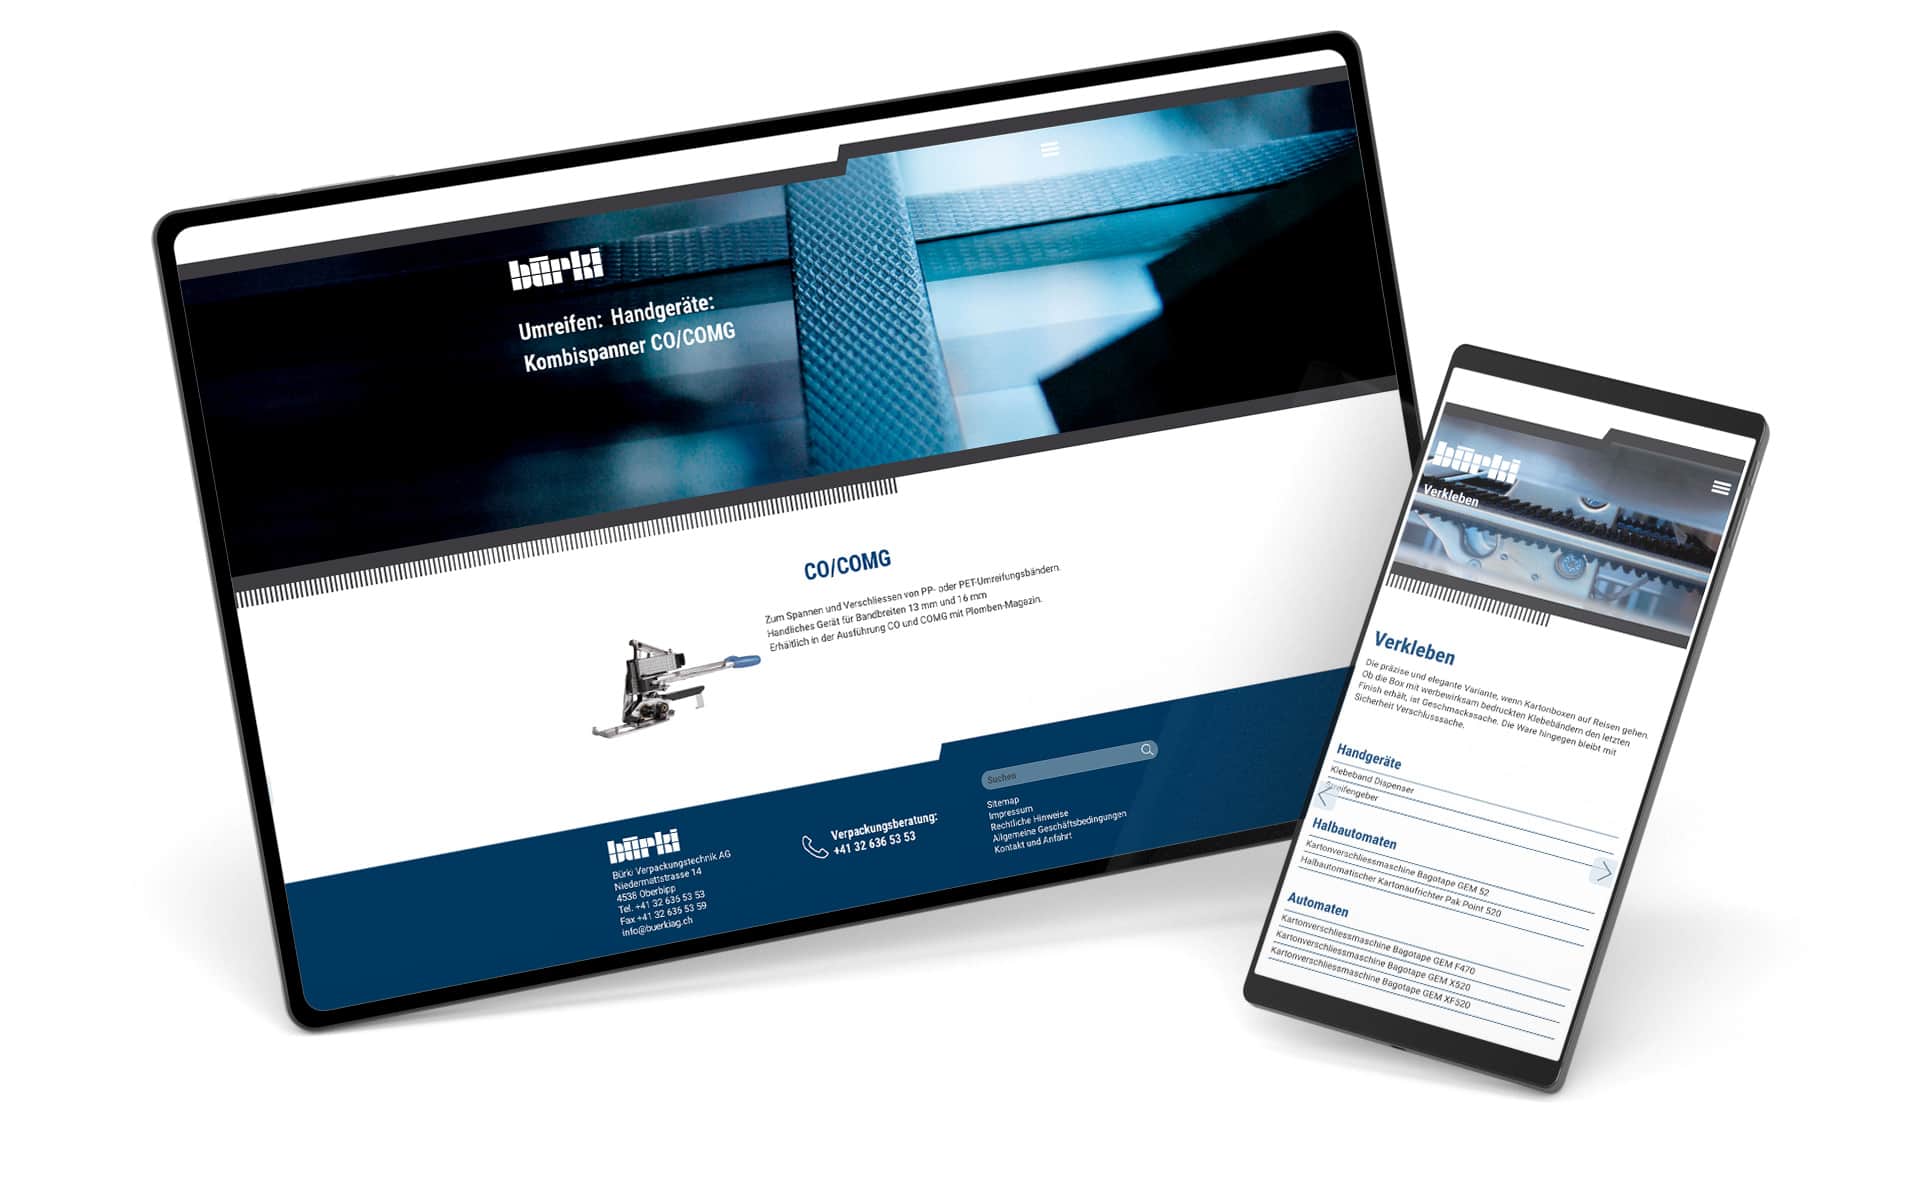 Bürki AG, intelligente Verpackungstechnologie, Online Web-Katalog mit Blätterfunktion zur Unterstützung des Verkaufs